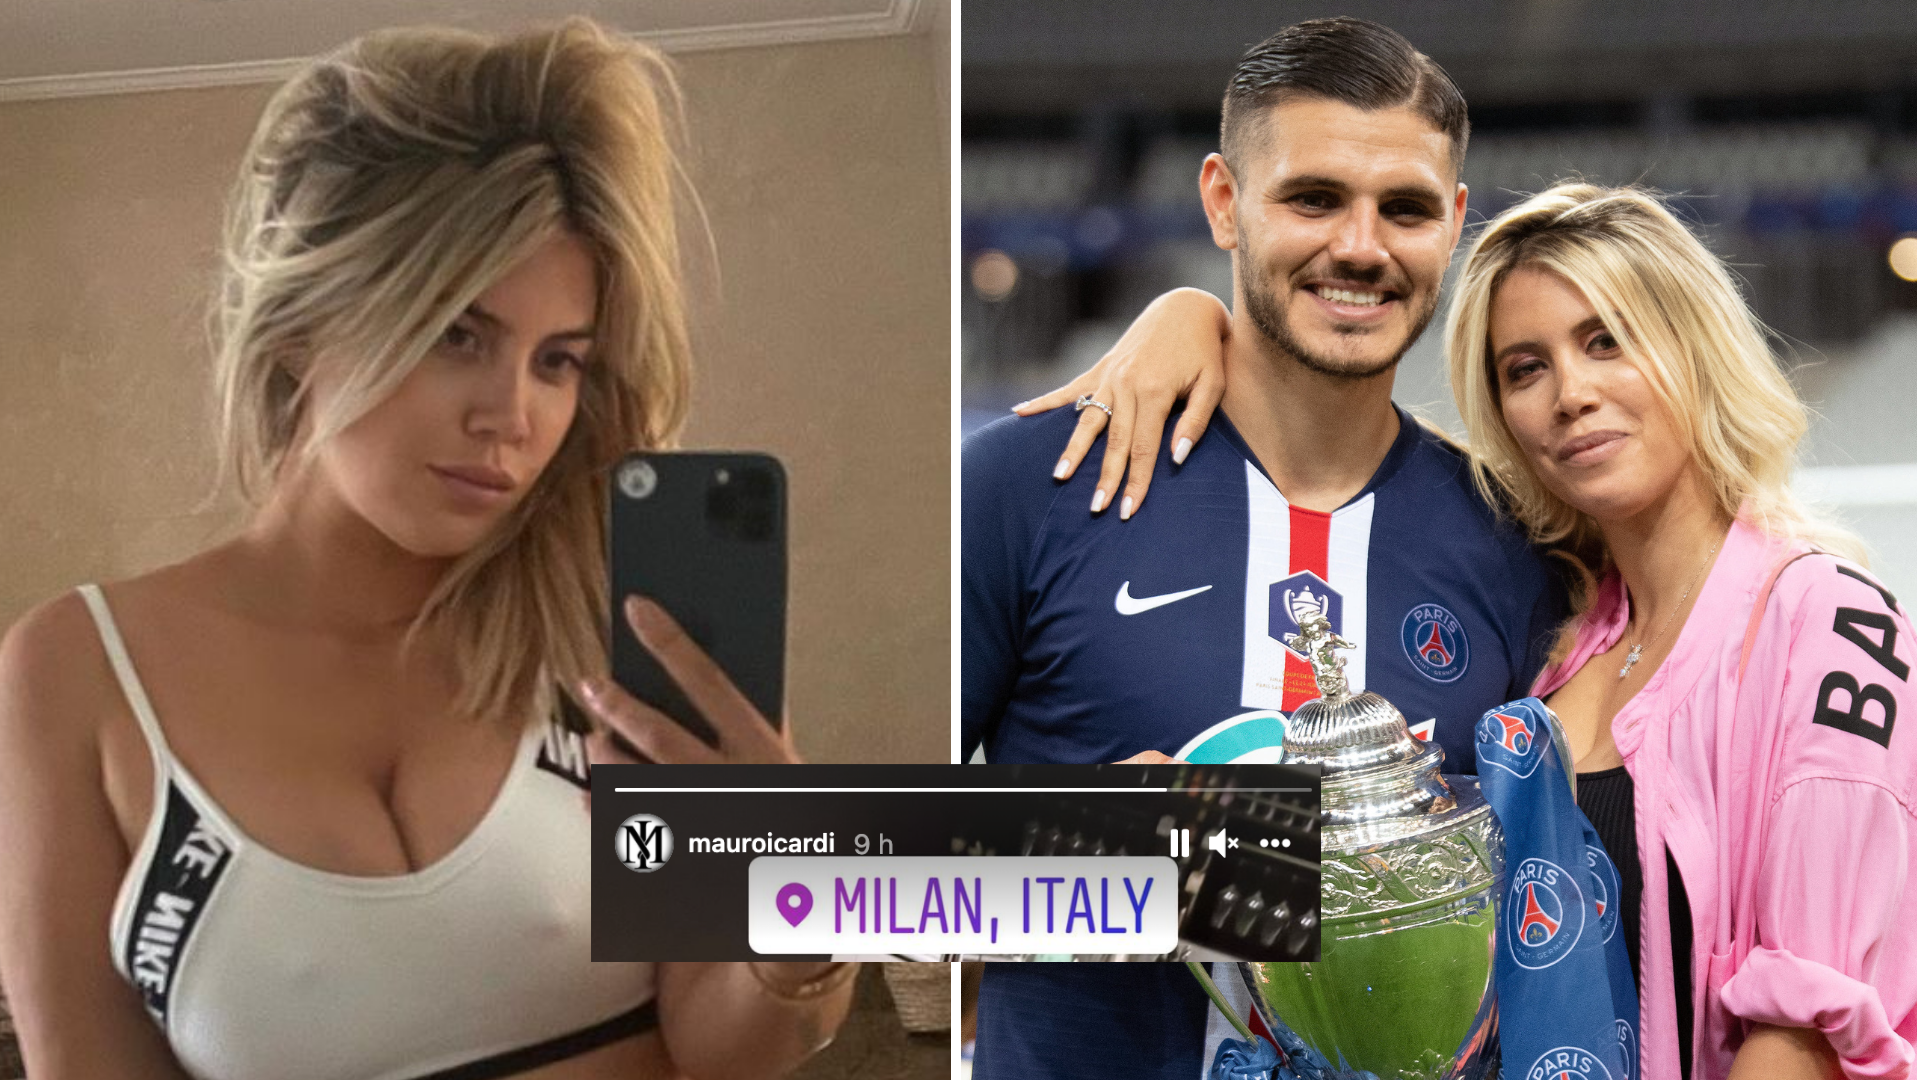 Mauro Icardi And Wanda Nara Saga Takes Twist On Social Media After Cheating Accusations